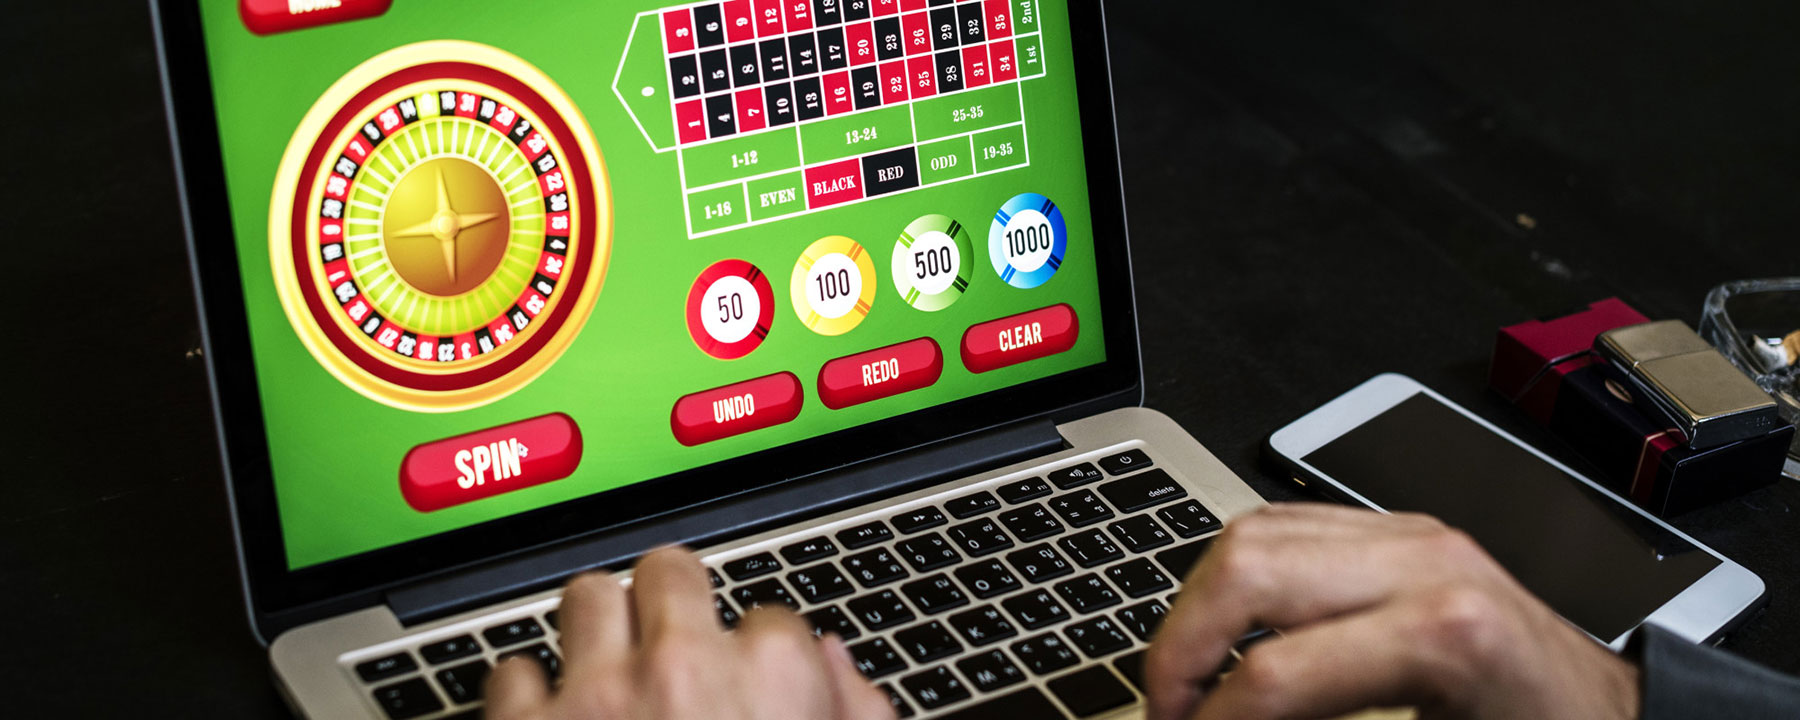 Рейтинг интернет казино: каким заведениям стоит доверять?